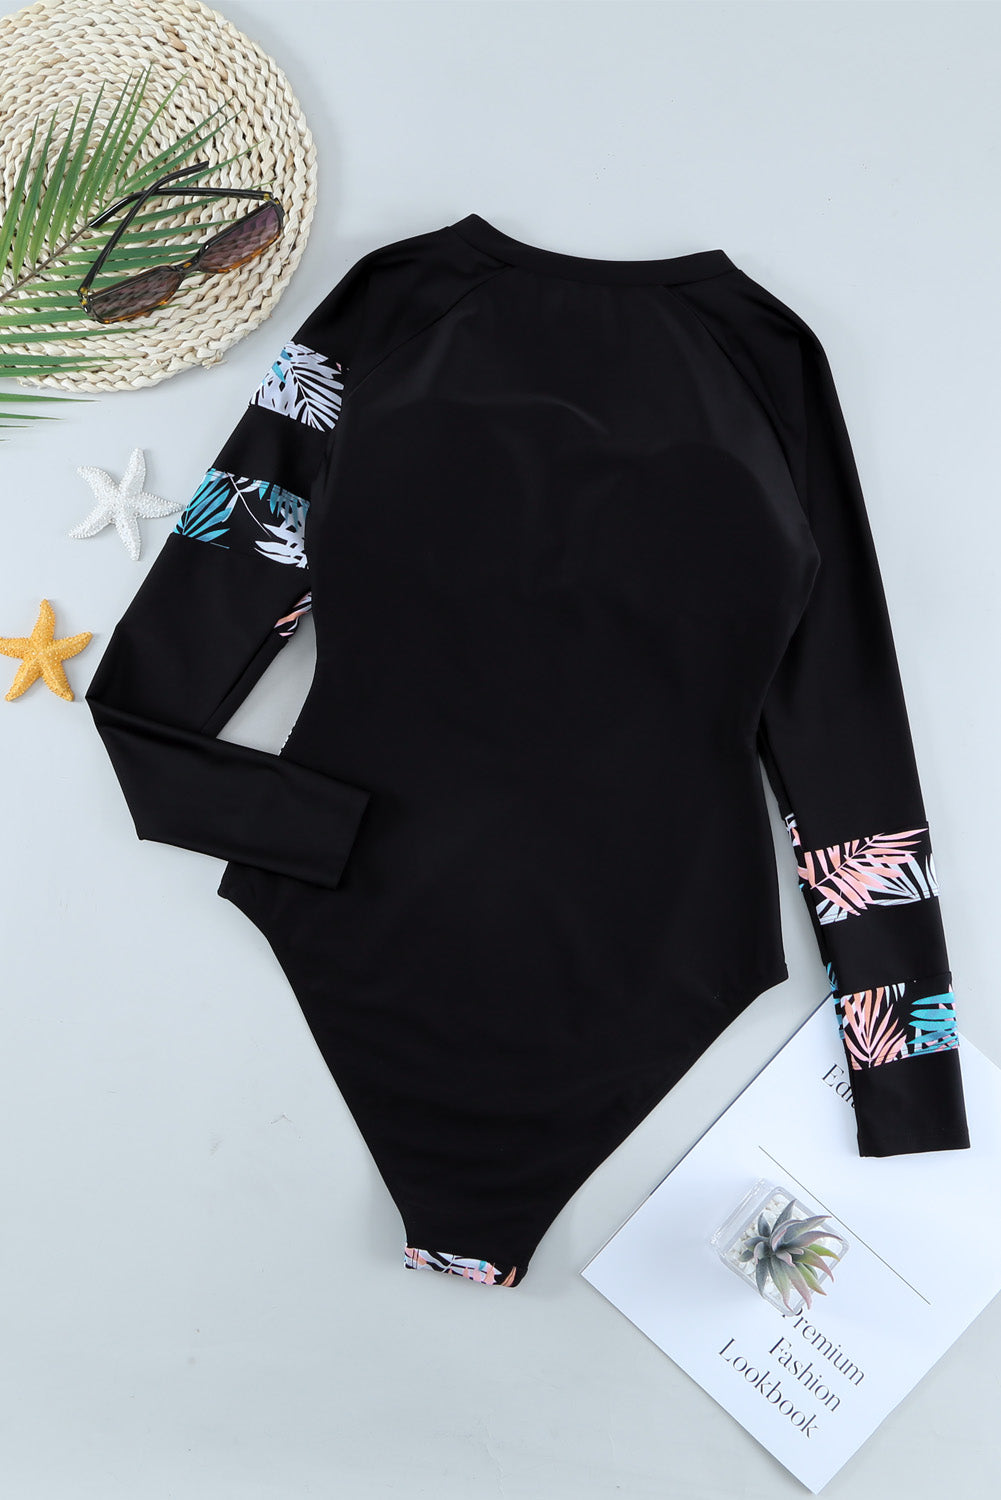 Himmelblaue Langarm-Surf-Rashguard-Badebekleidung mit Reißverschluss und Blätter-Print